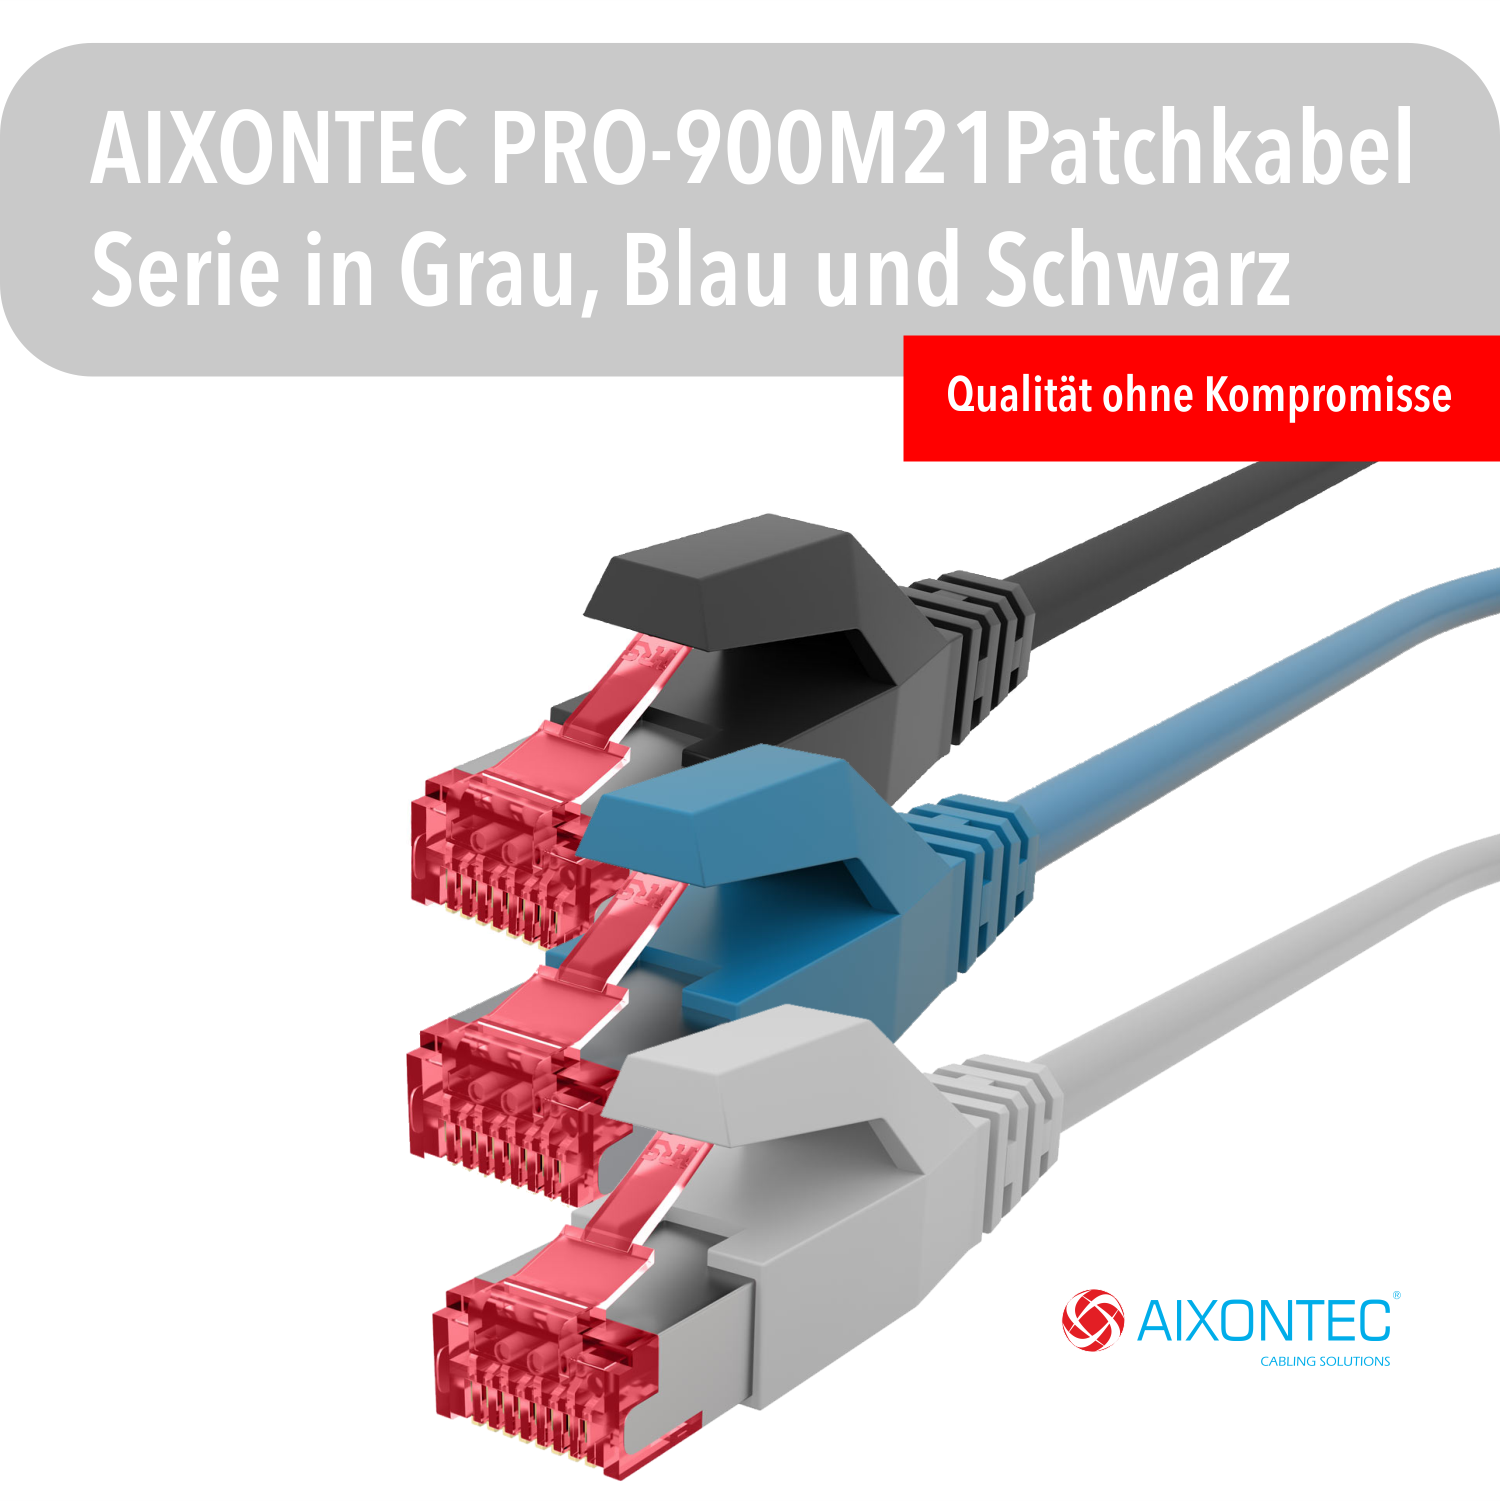 AIXONTEC 6,0m Cat.6 RJ45 Ethernetkabel Lankabel Gigabit, Patchkabel 10 6,0 m Netzwerkkabel